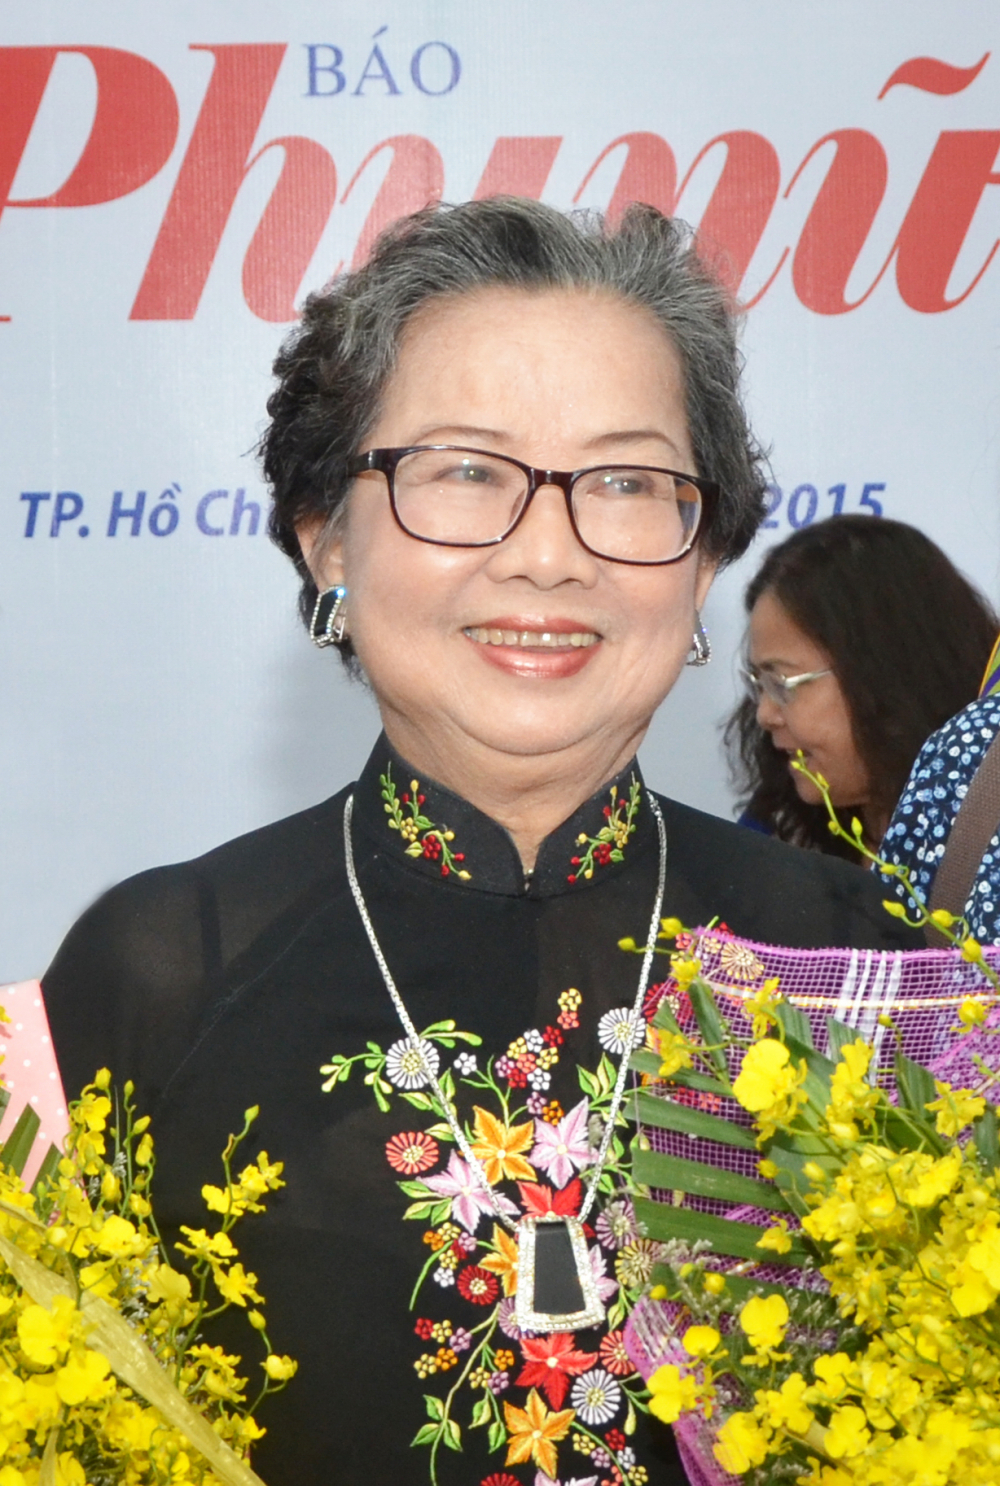 Tiến sĩ Hồ Thị Minh Nguyệt - nguyên Phó Chủ tịch Hội LHPN TP.HCM, nguyên Tổng Biên tập Báo Phụ Nữ TP.HCM